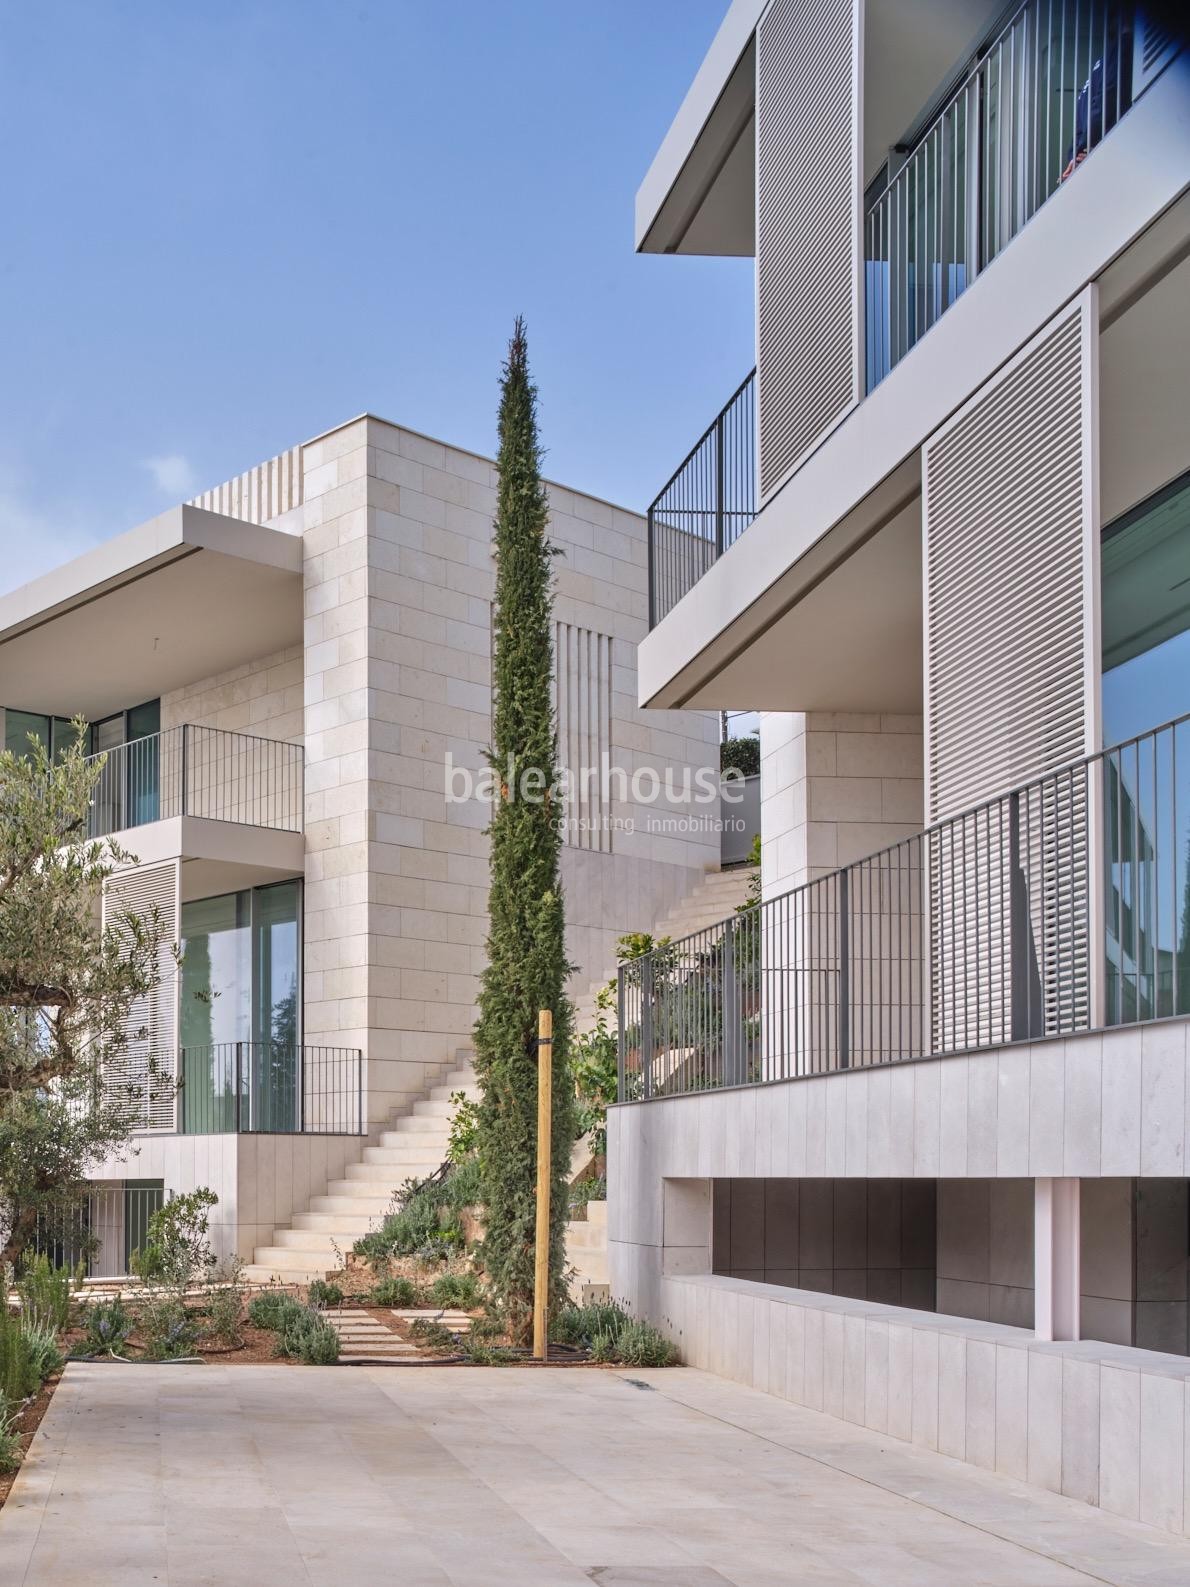 Neue Villa mit modernem Design, hoher Qualität und Meerblick in der Gegend von Bonanova.